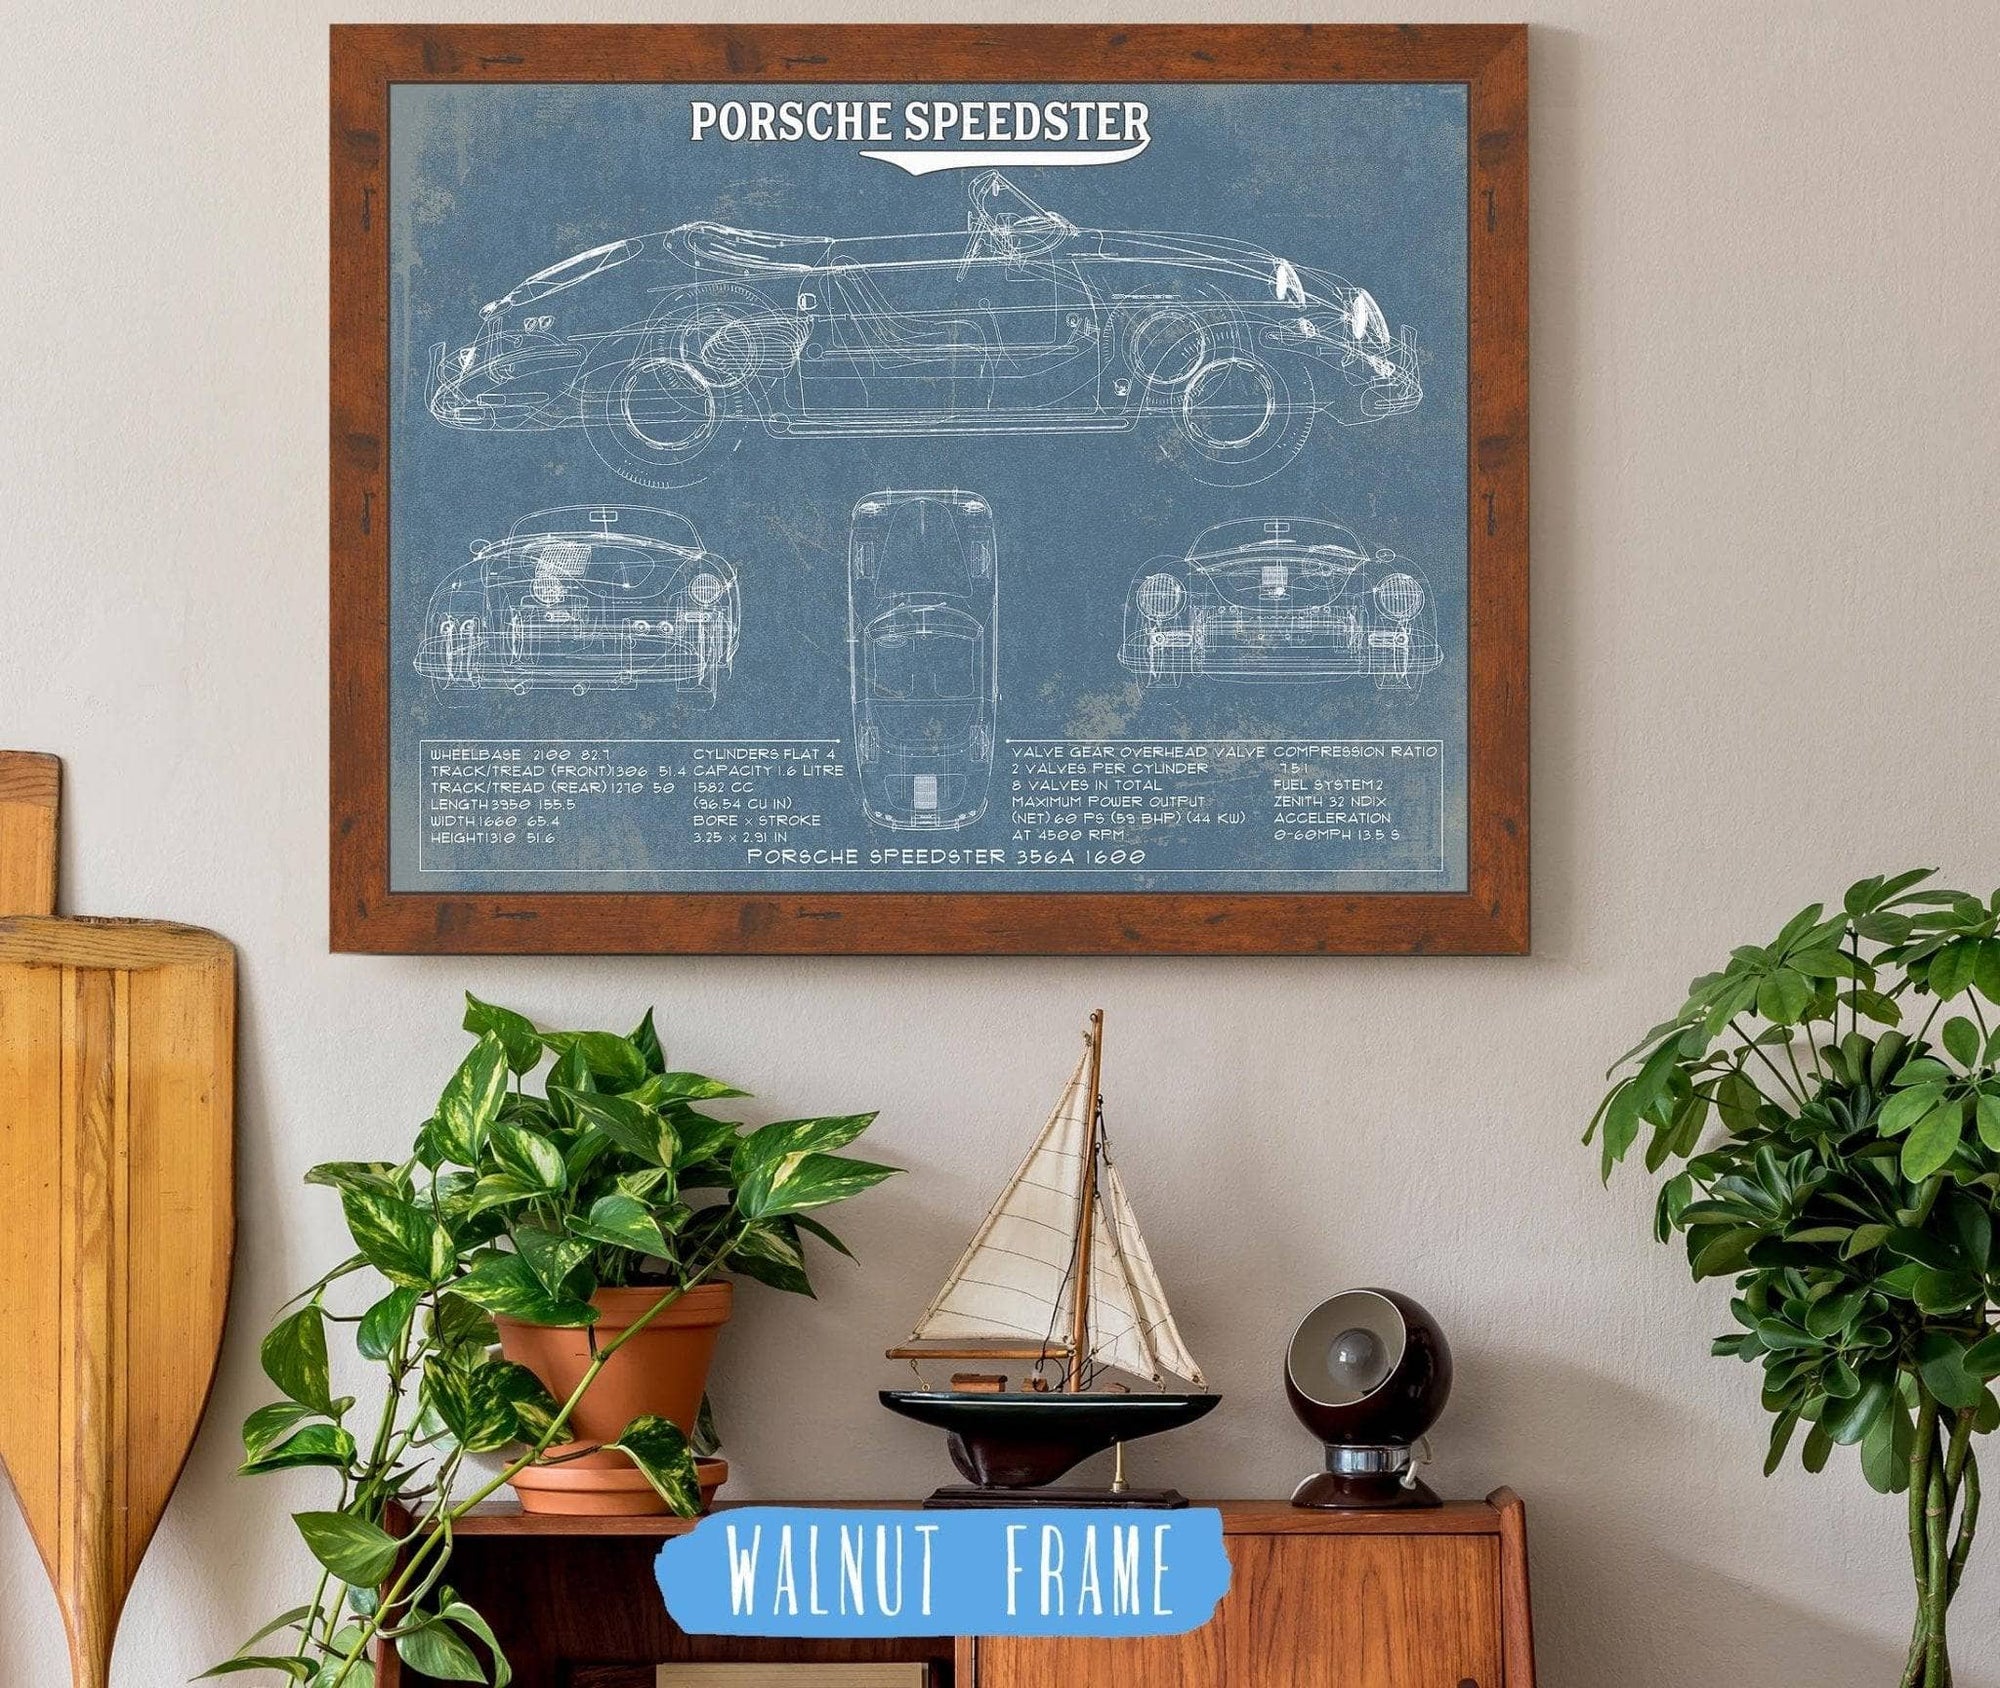 Cutler West Porsche Collection 14" x 11" / Walnut Frame Porsche Speedster 356A 1600 Vintage Auto Print 694513411-BLUE_11015